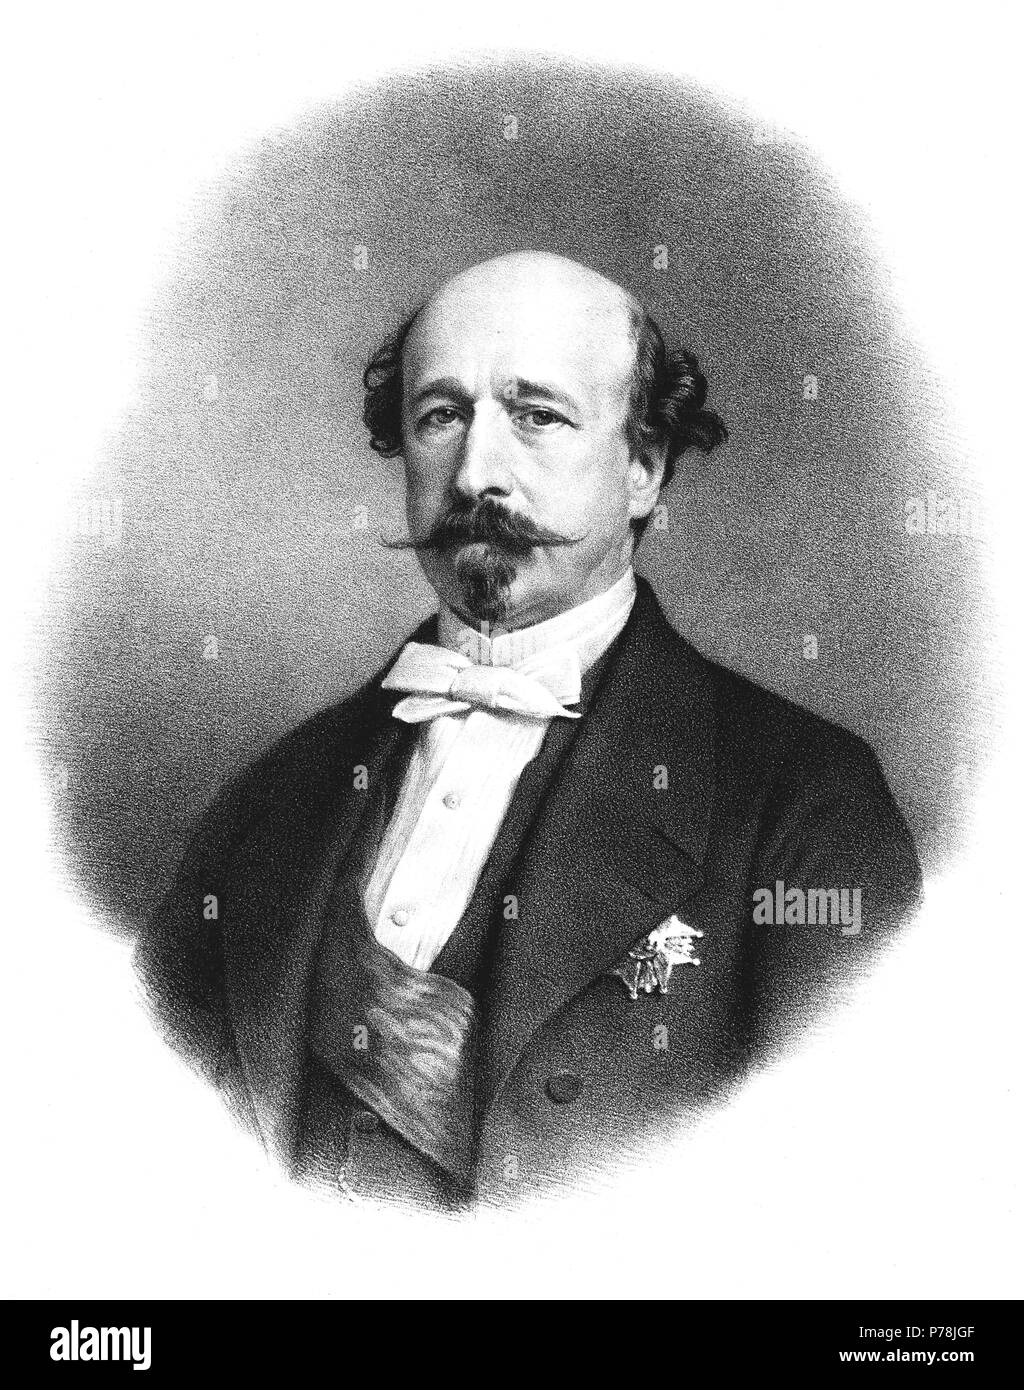 Morny, Charles August (1811-1865), financiero y político francés, conde y duque de Morny, hermano bastardo de Napoleón III. Grabado de 1865. Stock Photo